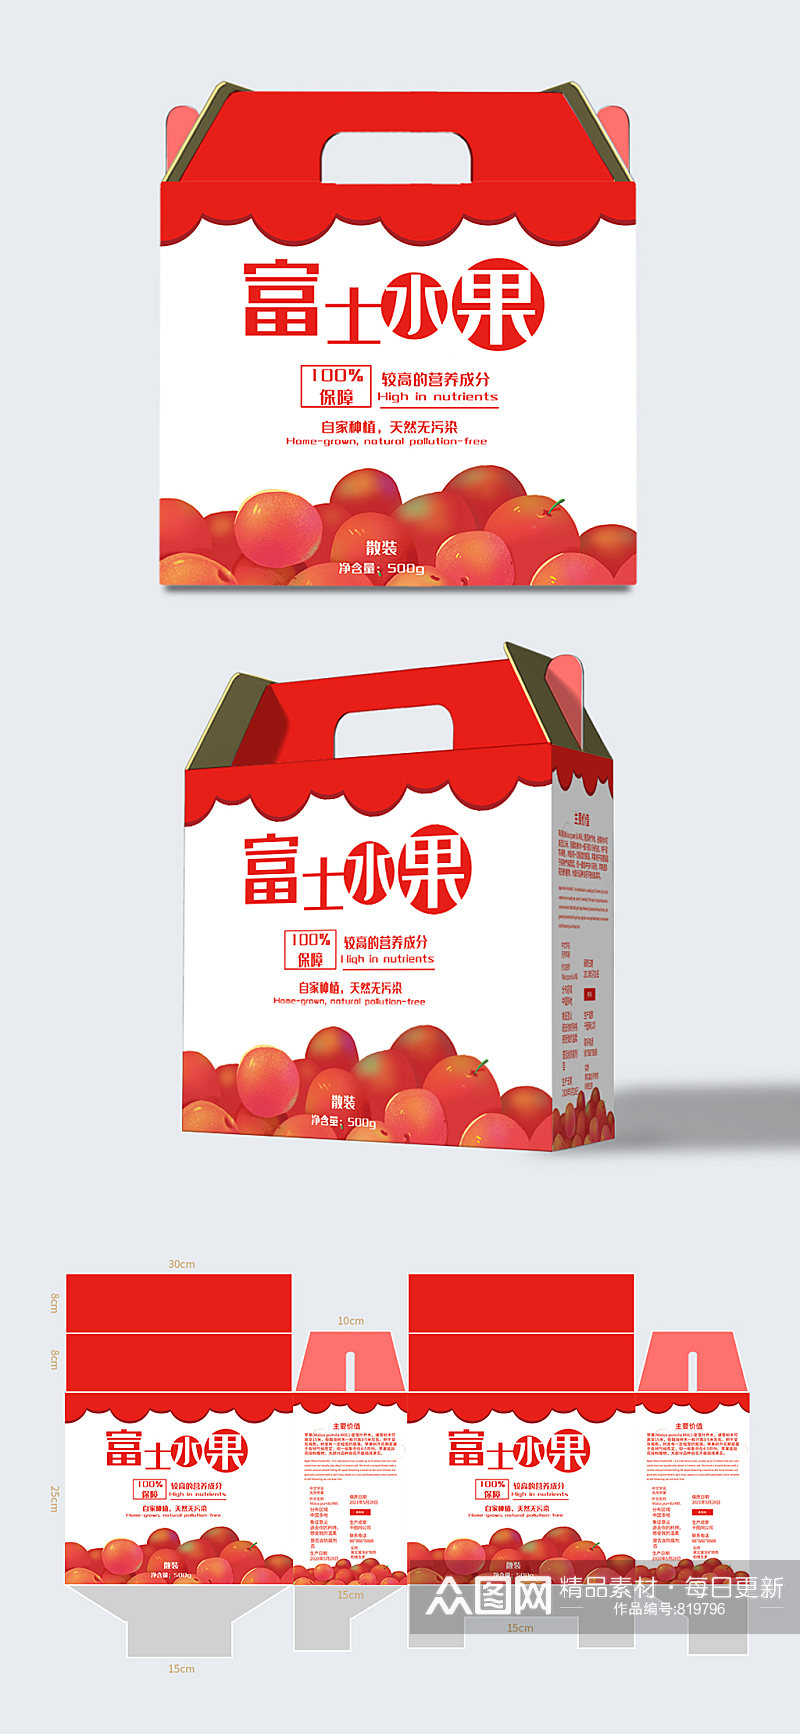 农产品水果苹果箱包装盒礼盒包装设计素材